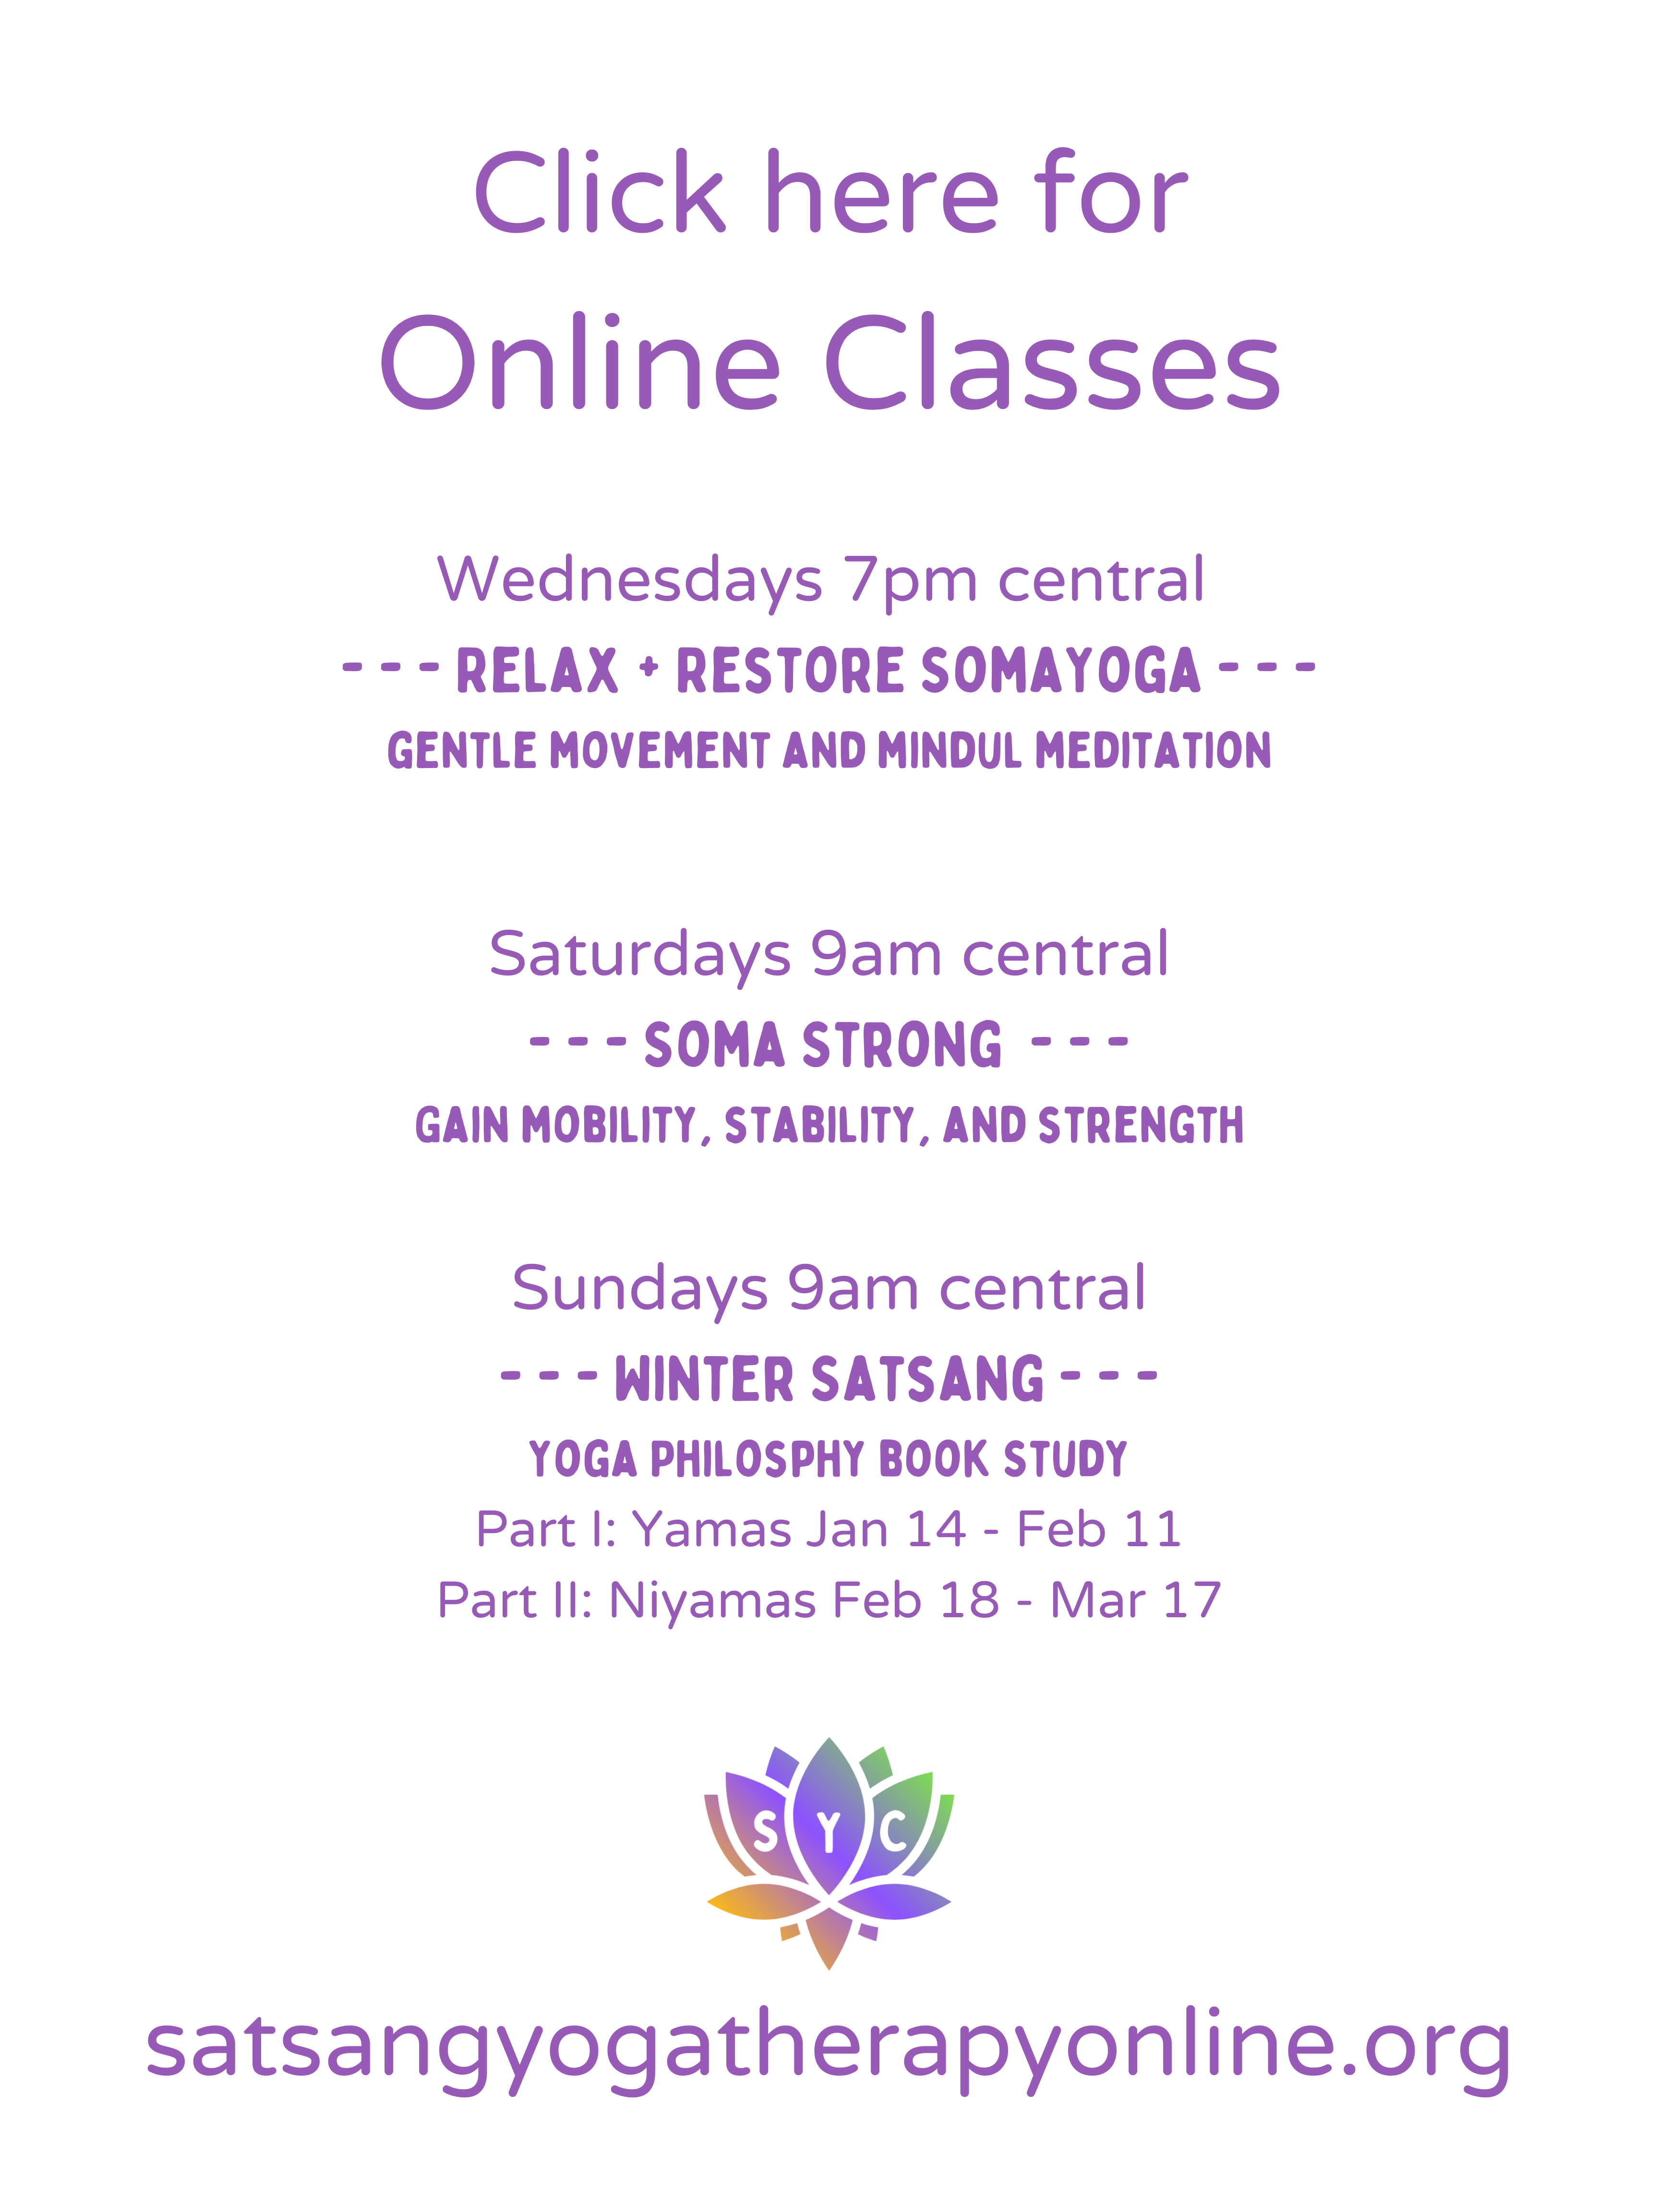 Live classes at Satsang Yoga Collective